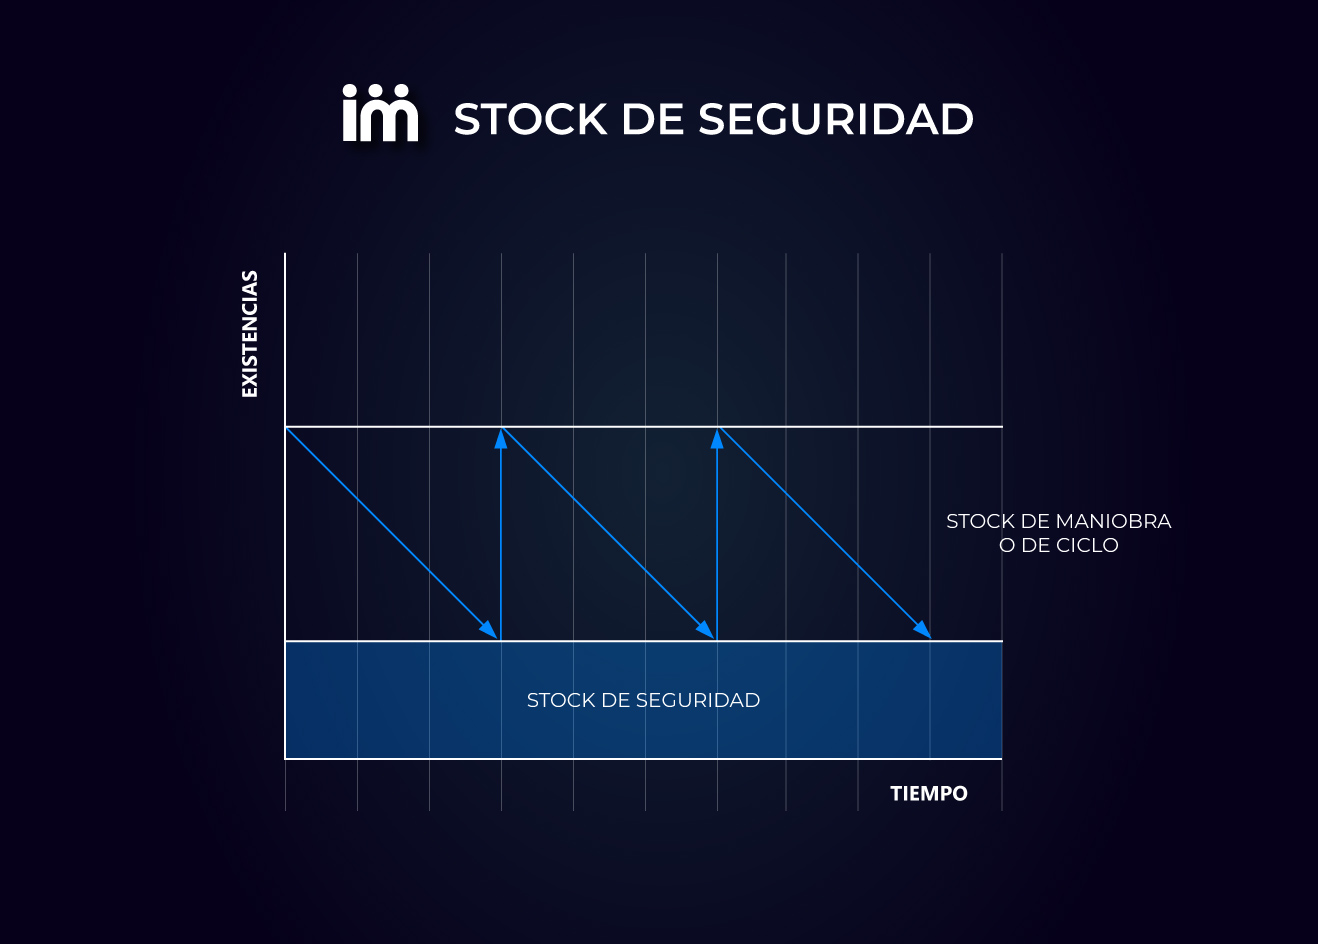 Stock de seguridad expresado de forma gráfica.